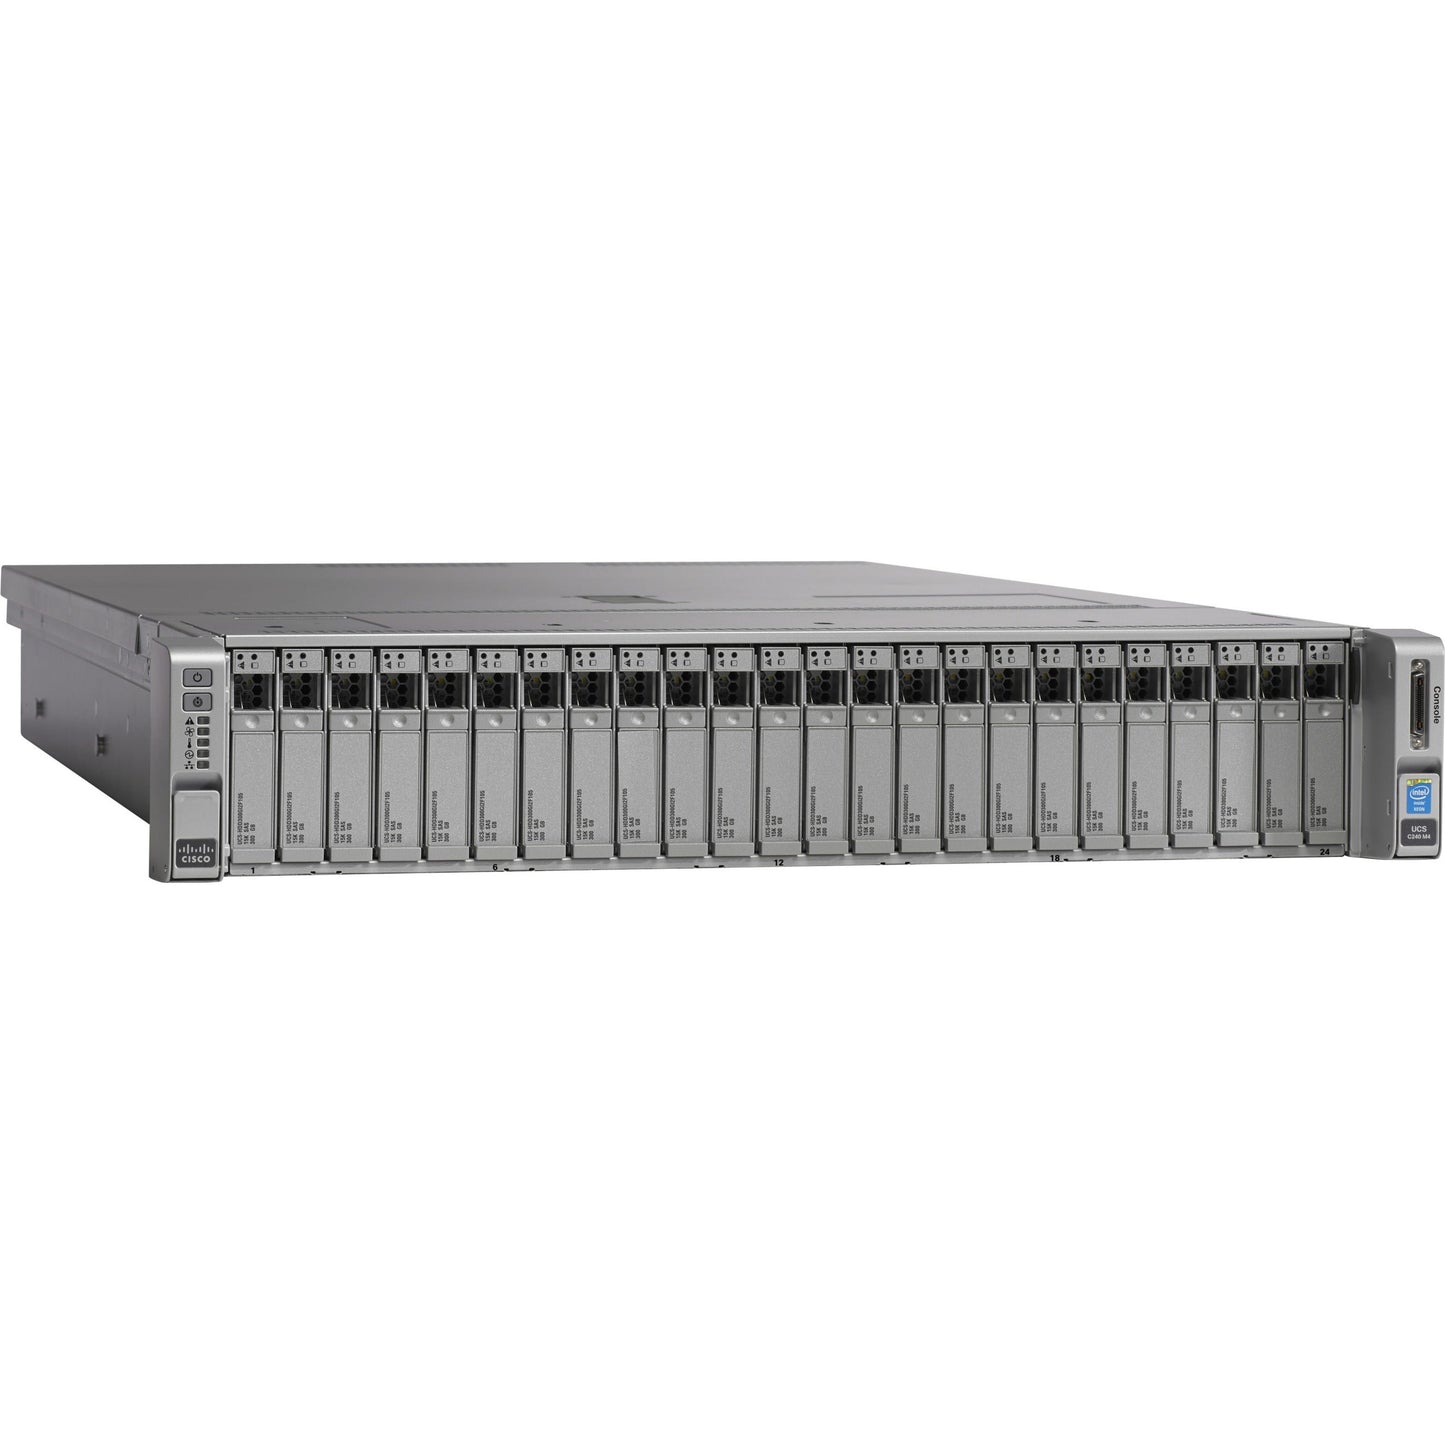 Cisco C240 M4 2U Rack Server - 2 x Intel Xeon E5-2637 v3 3.50 GHz - 256 GB RAM - 12Gb/s SAS Serial ATA Controller